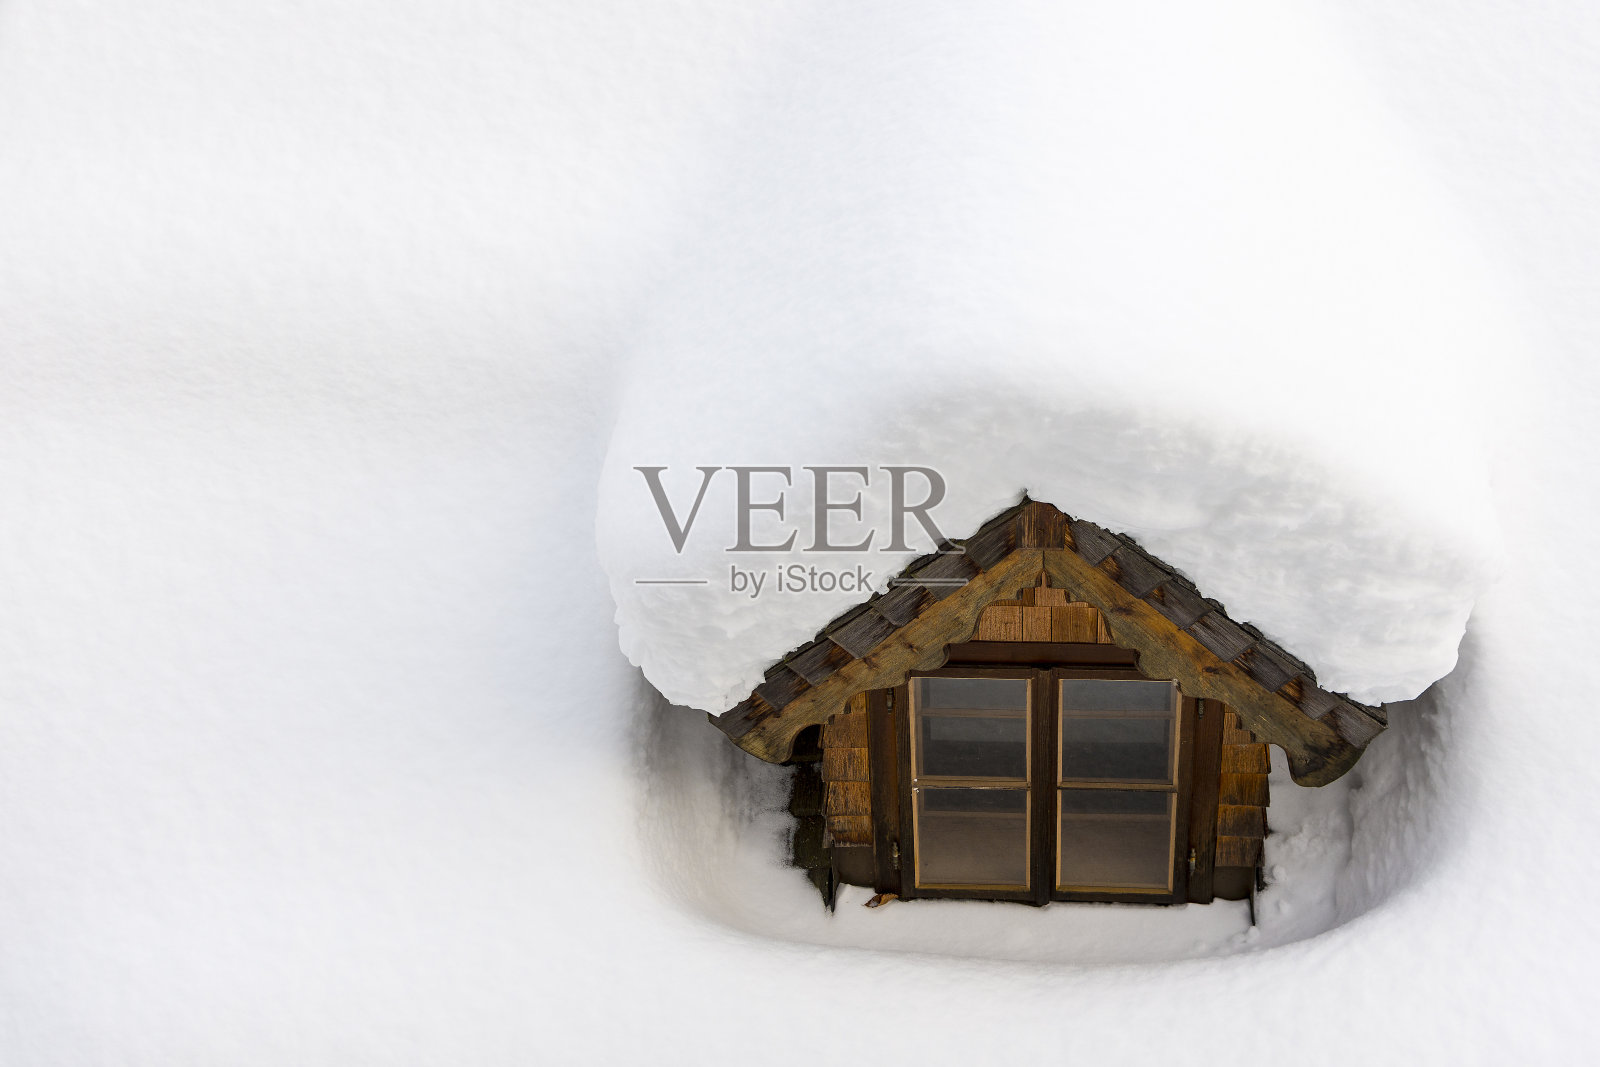 屋顶窗户被冬天的雪覆盖。保温概念照片摄影图片